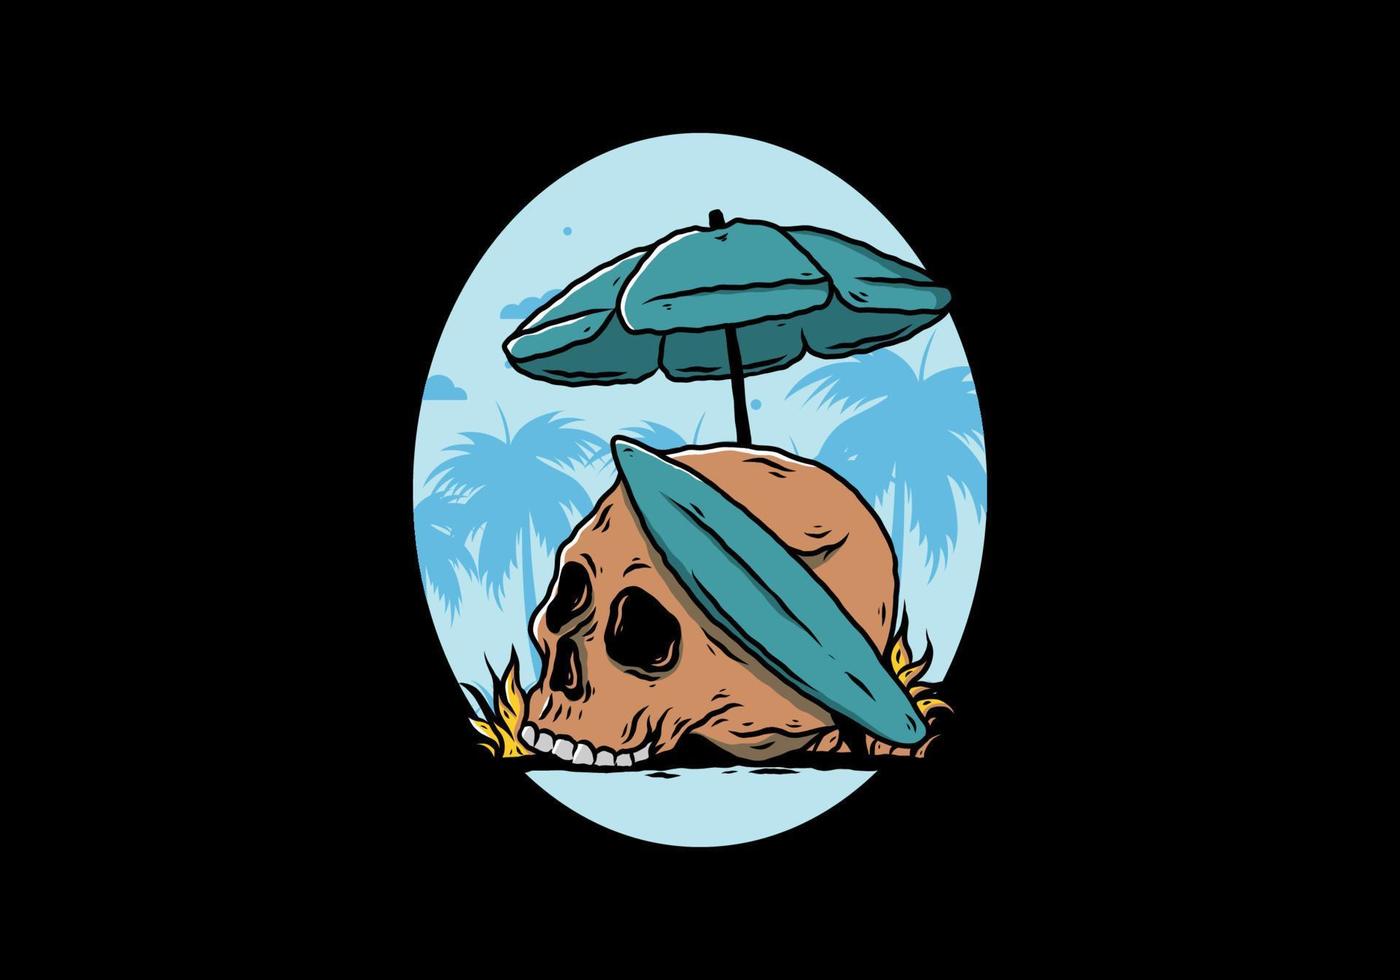 illustration of skull with surfing board under beach umbrella vector